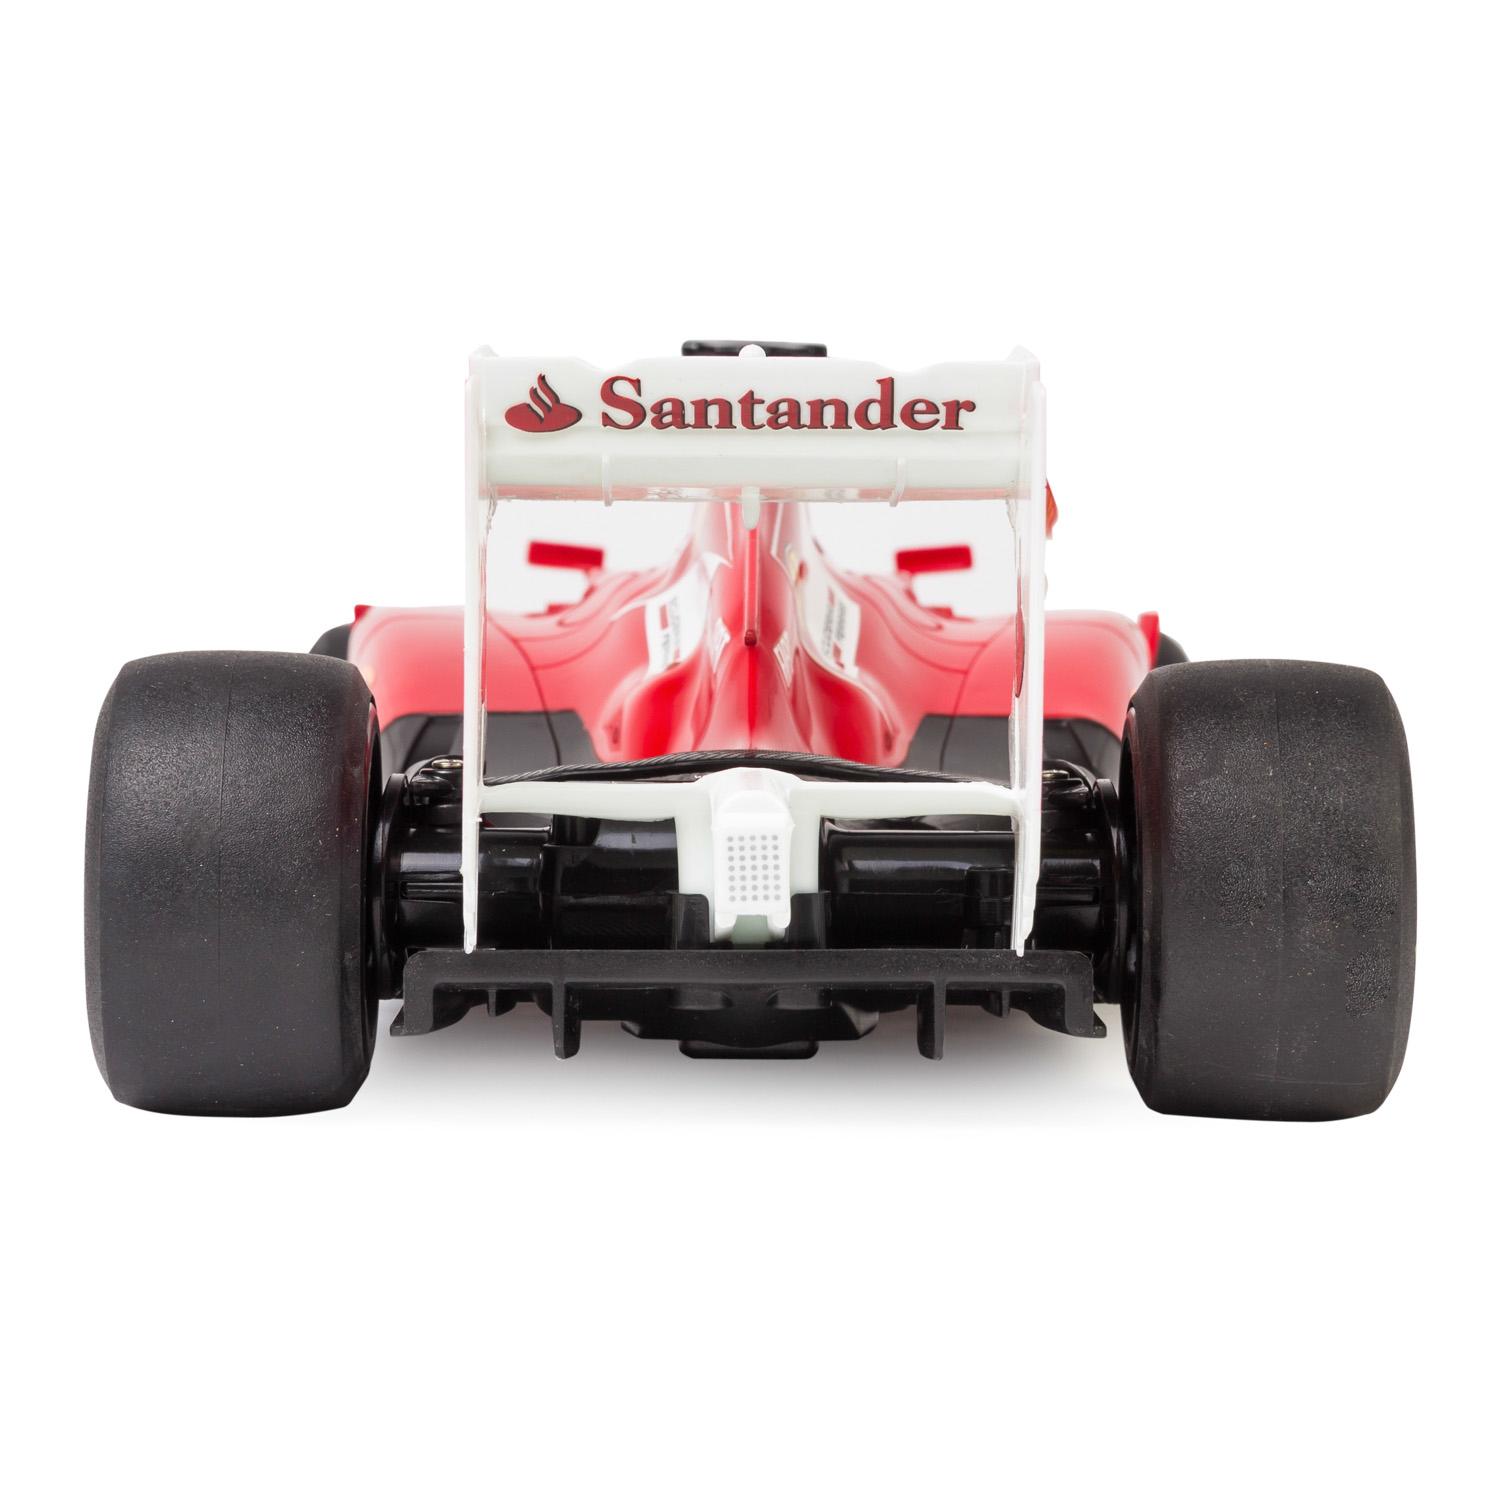 Радиоуправляемая машина - Ferrari F1, цвет красный, 1:12, 27MHZ  